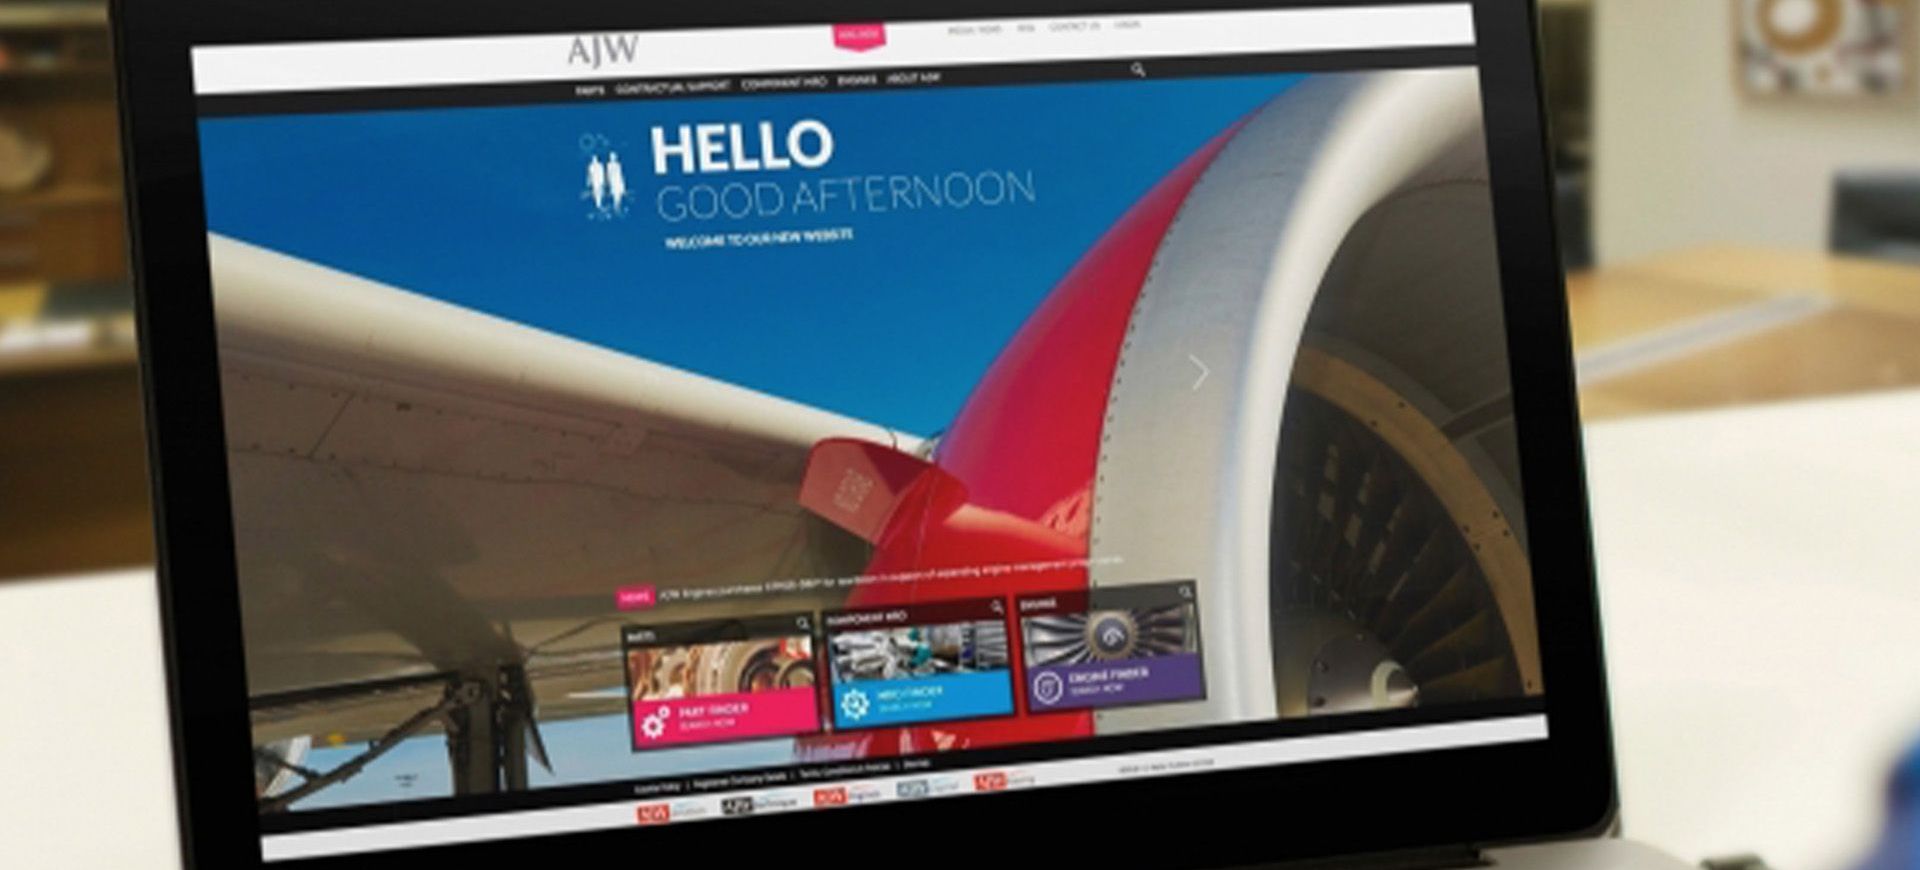 New AJW website takes flight